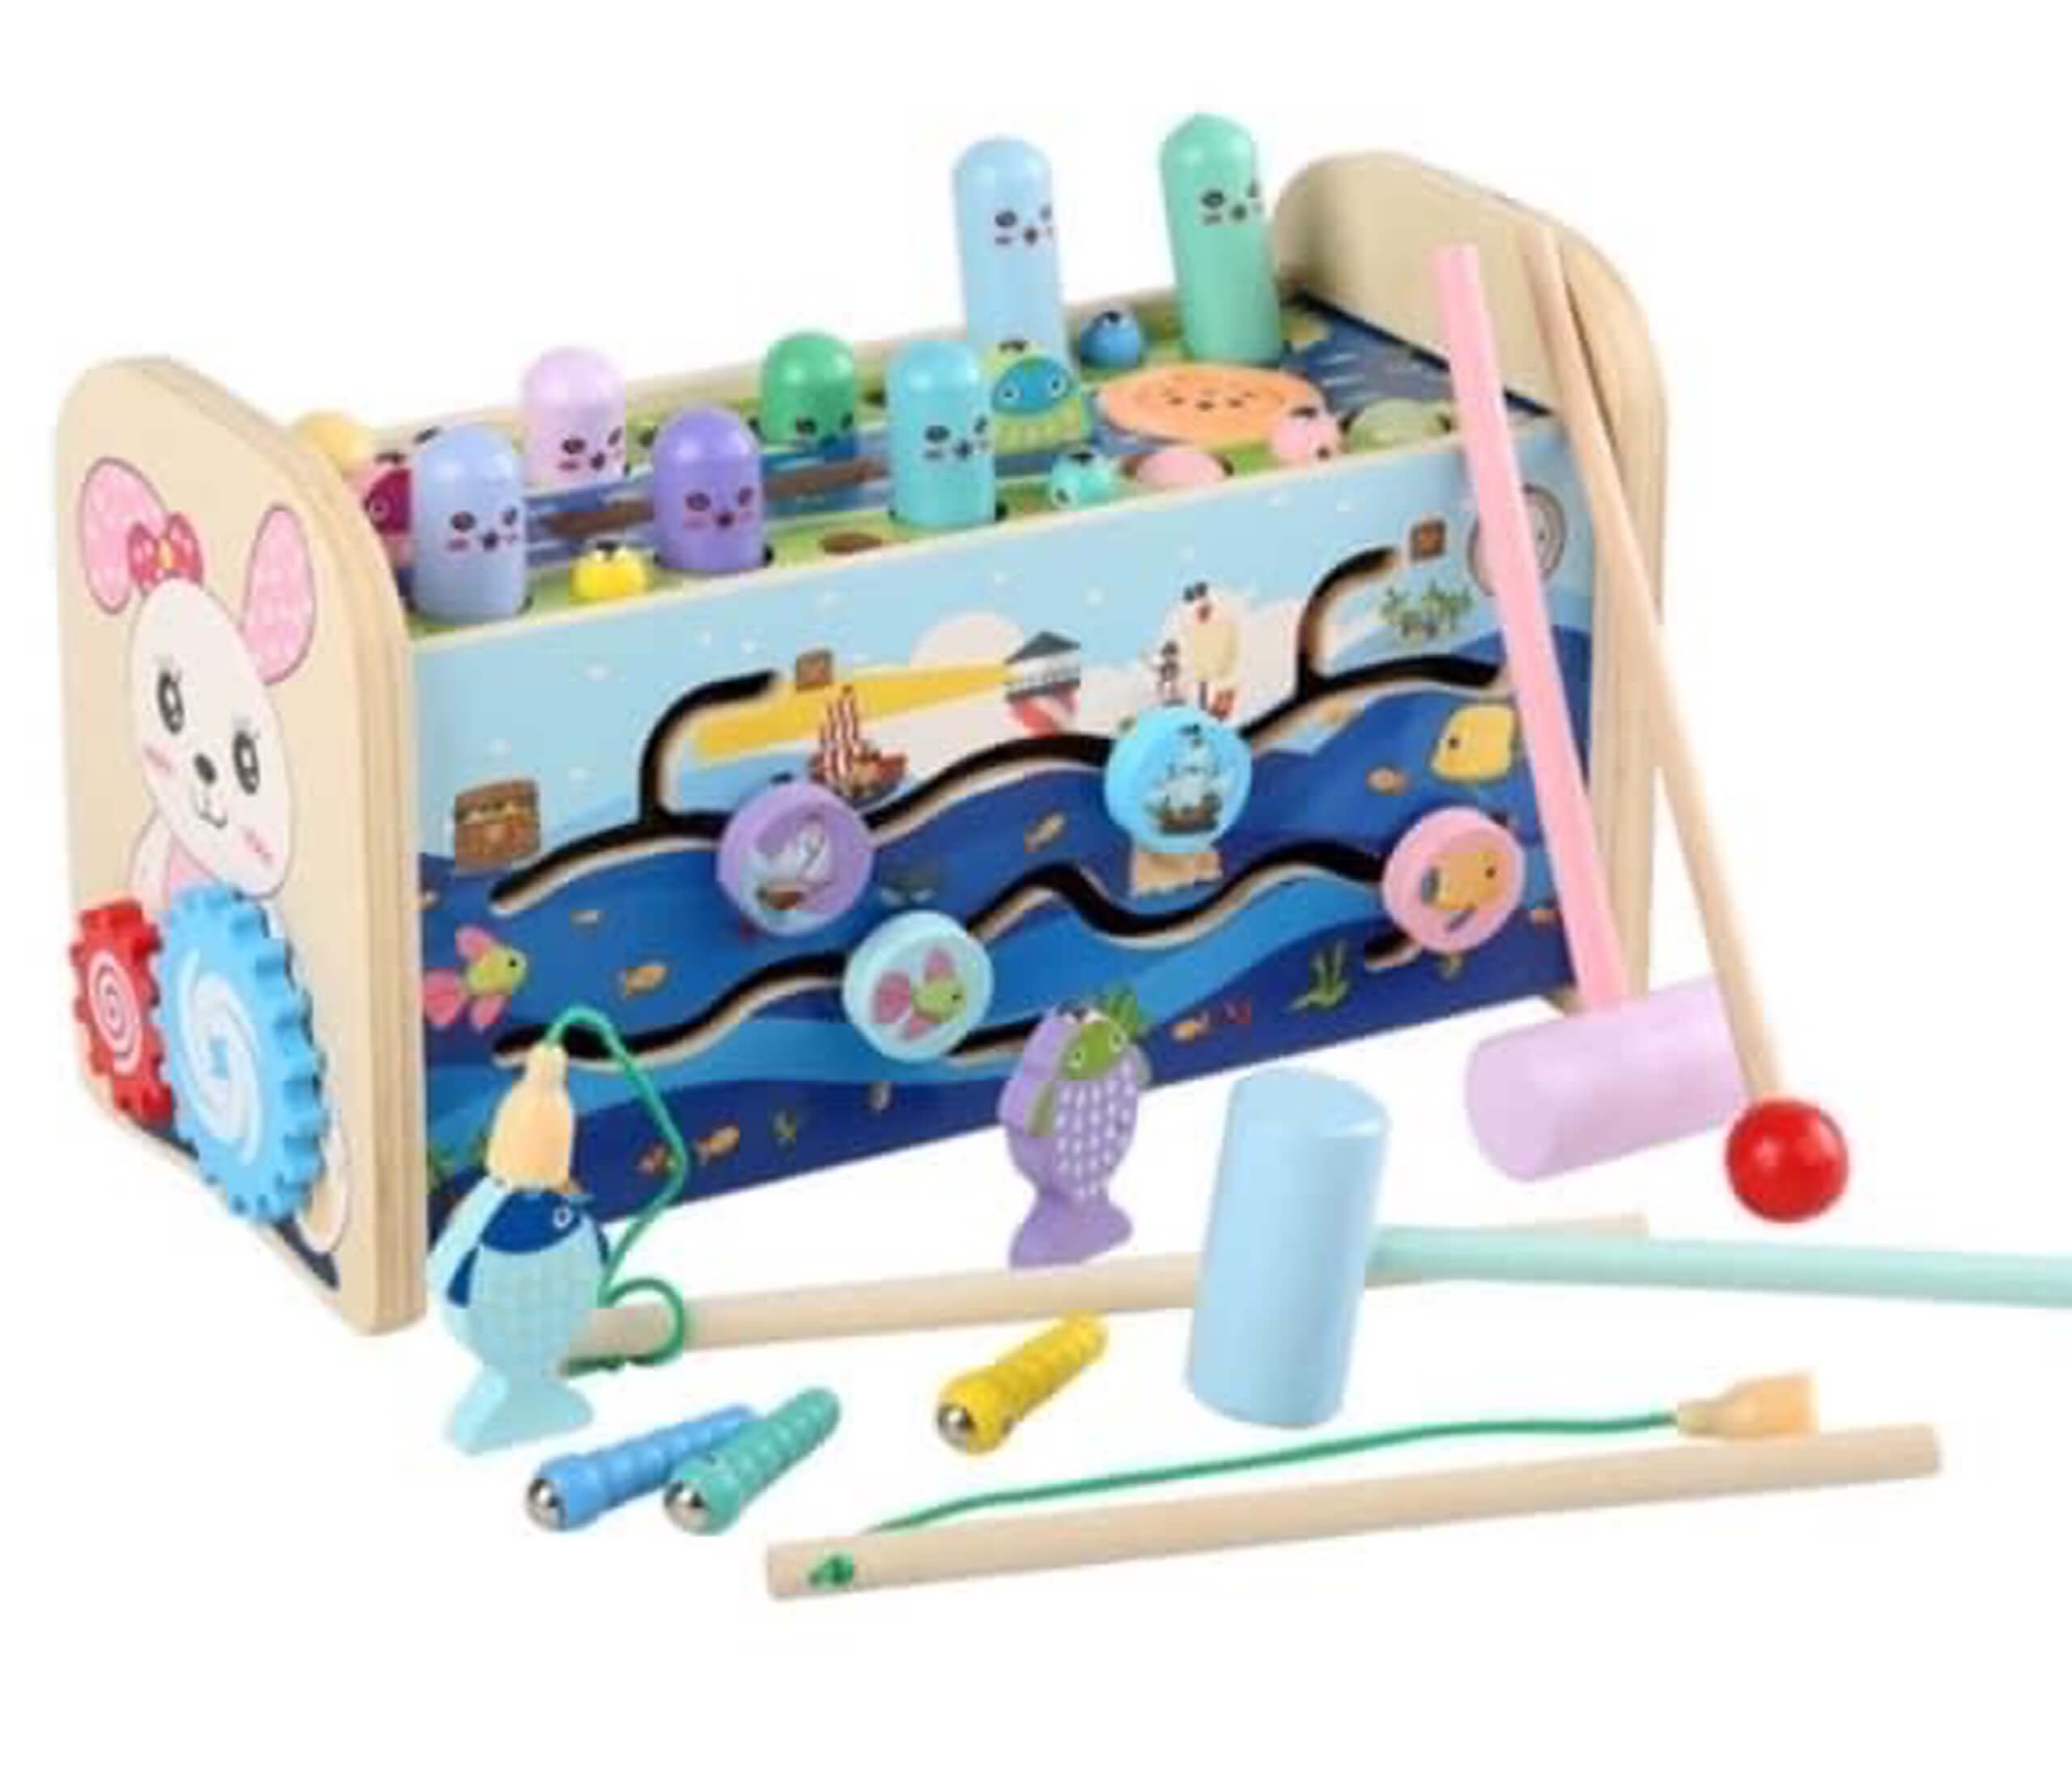 ĐỒ CHƠI GIÁO DỤC CHO BÉ BẰNG GỖ - Bộ đồ chơi đập chuột gỗ cho trẻ kiêm nhạc cụ đánh đàn, tìm đường zíc zắc 3 in 1, thiết kế đẹp, an toàn cho trẻ